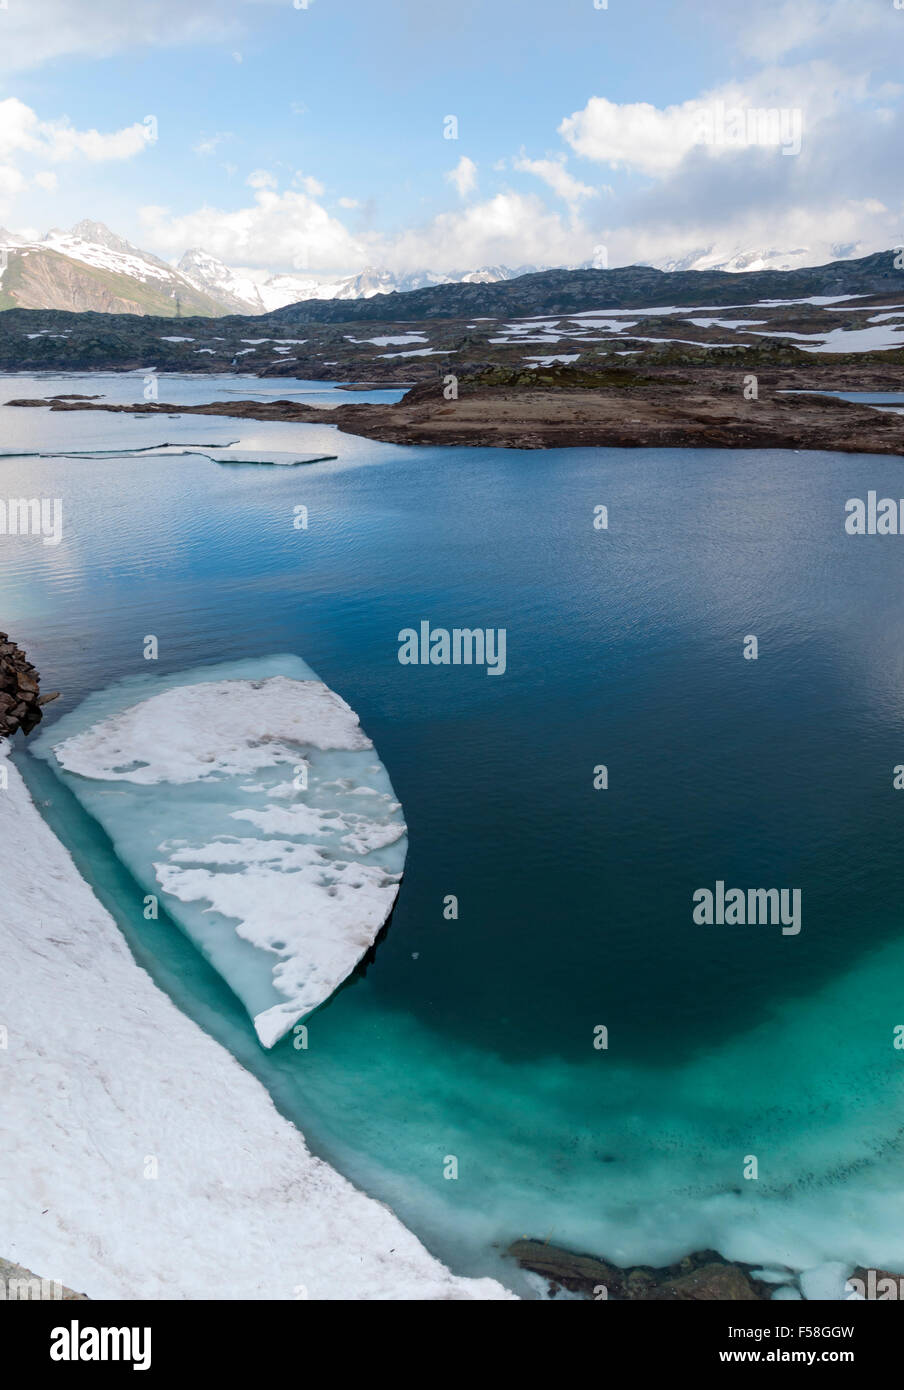 Plaque de glace flottent dans le lac glaciaire 'Totensee' sur le dessus de col du Grimsel, Suisse (altitude 2165m). Banque D'Images